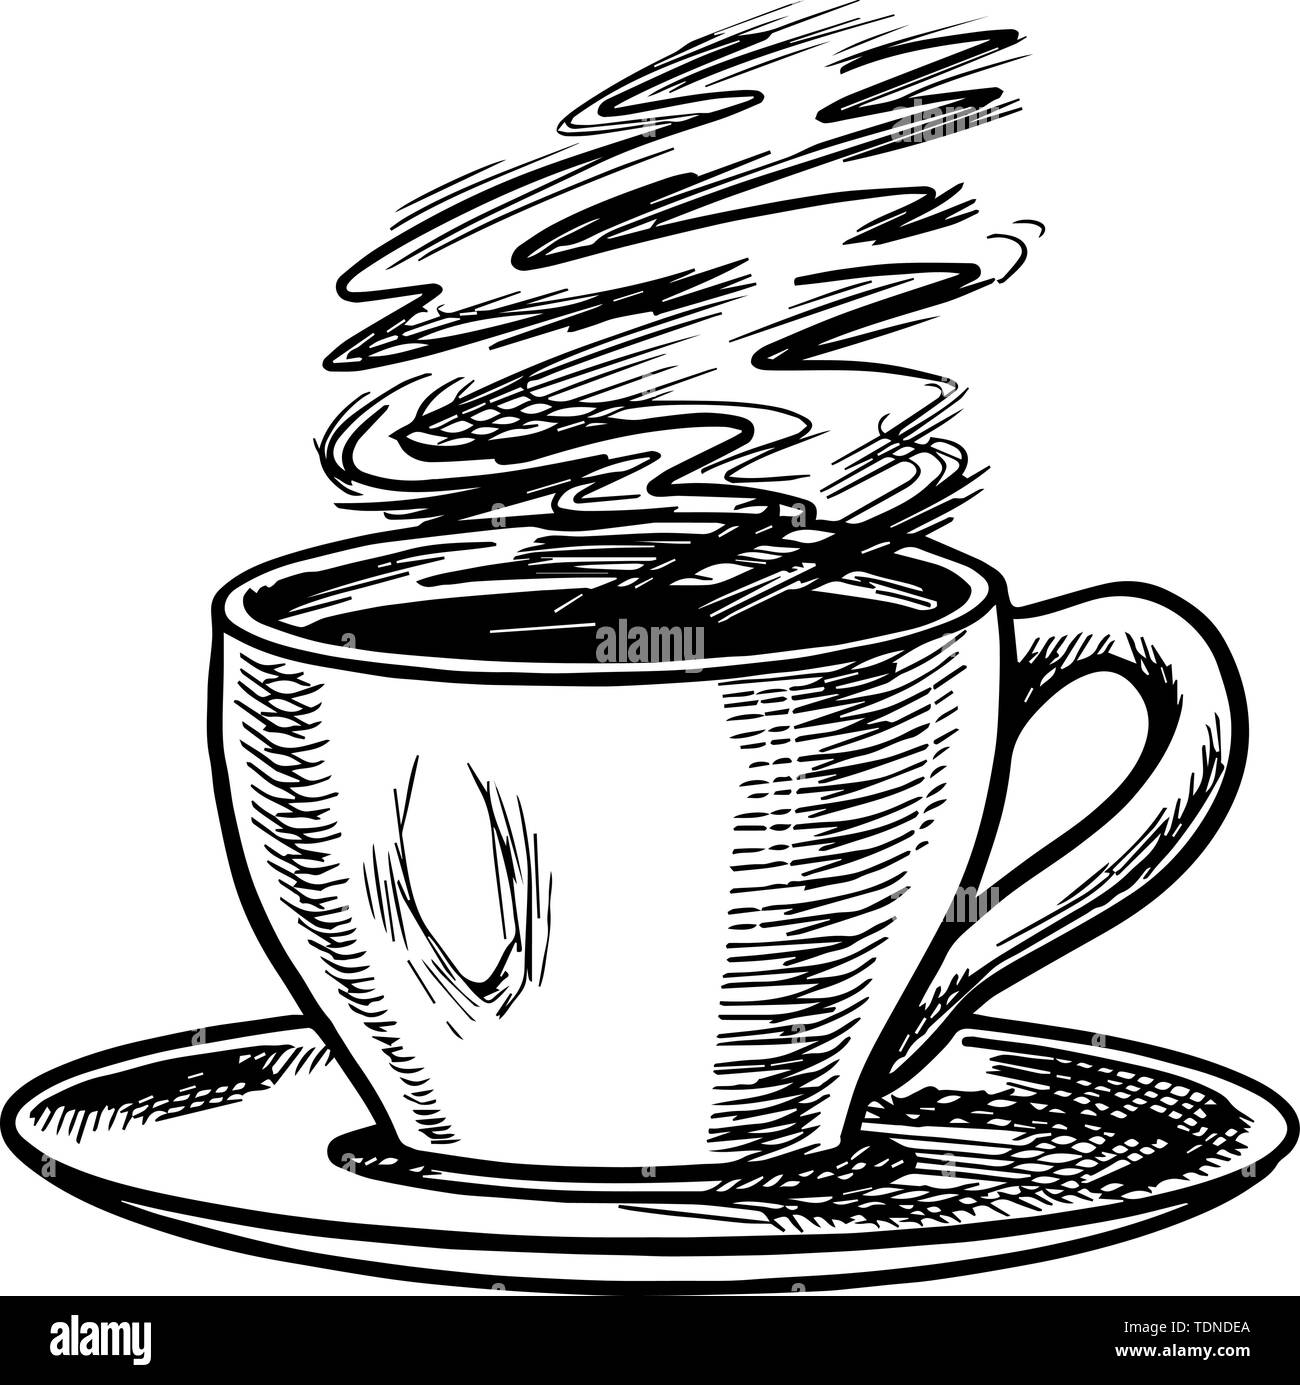 Tasse Kaffee Im Vintage Style Cappuccino In Einem Glas Hand Graviert Retro Skizze Vorlage Fur Das Logo Oder Label Stock Vektorgrafik Alamy